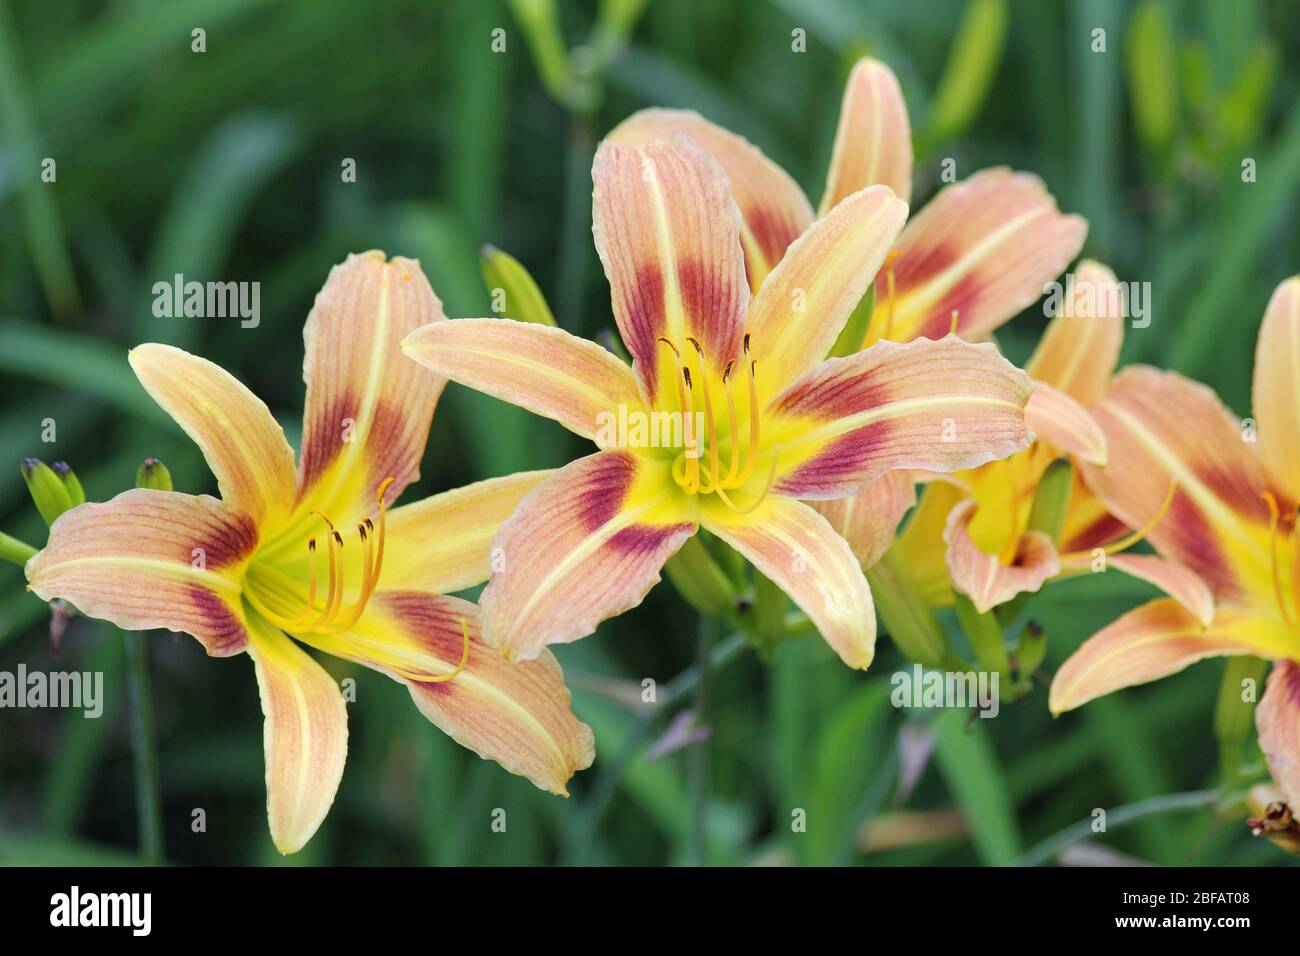 Amarylis flowers Stock Photo